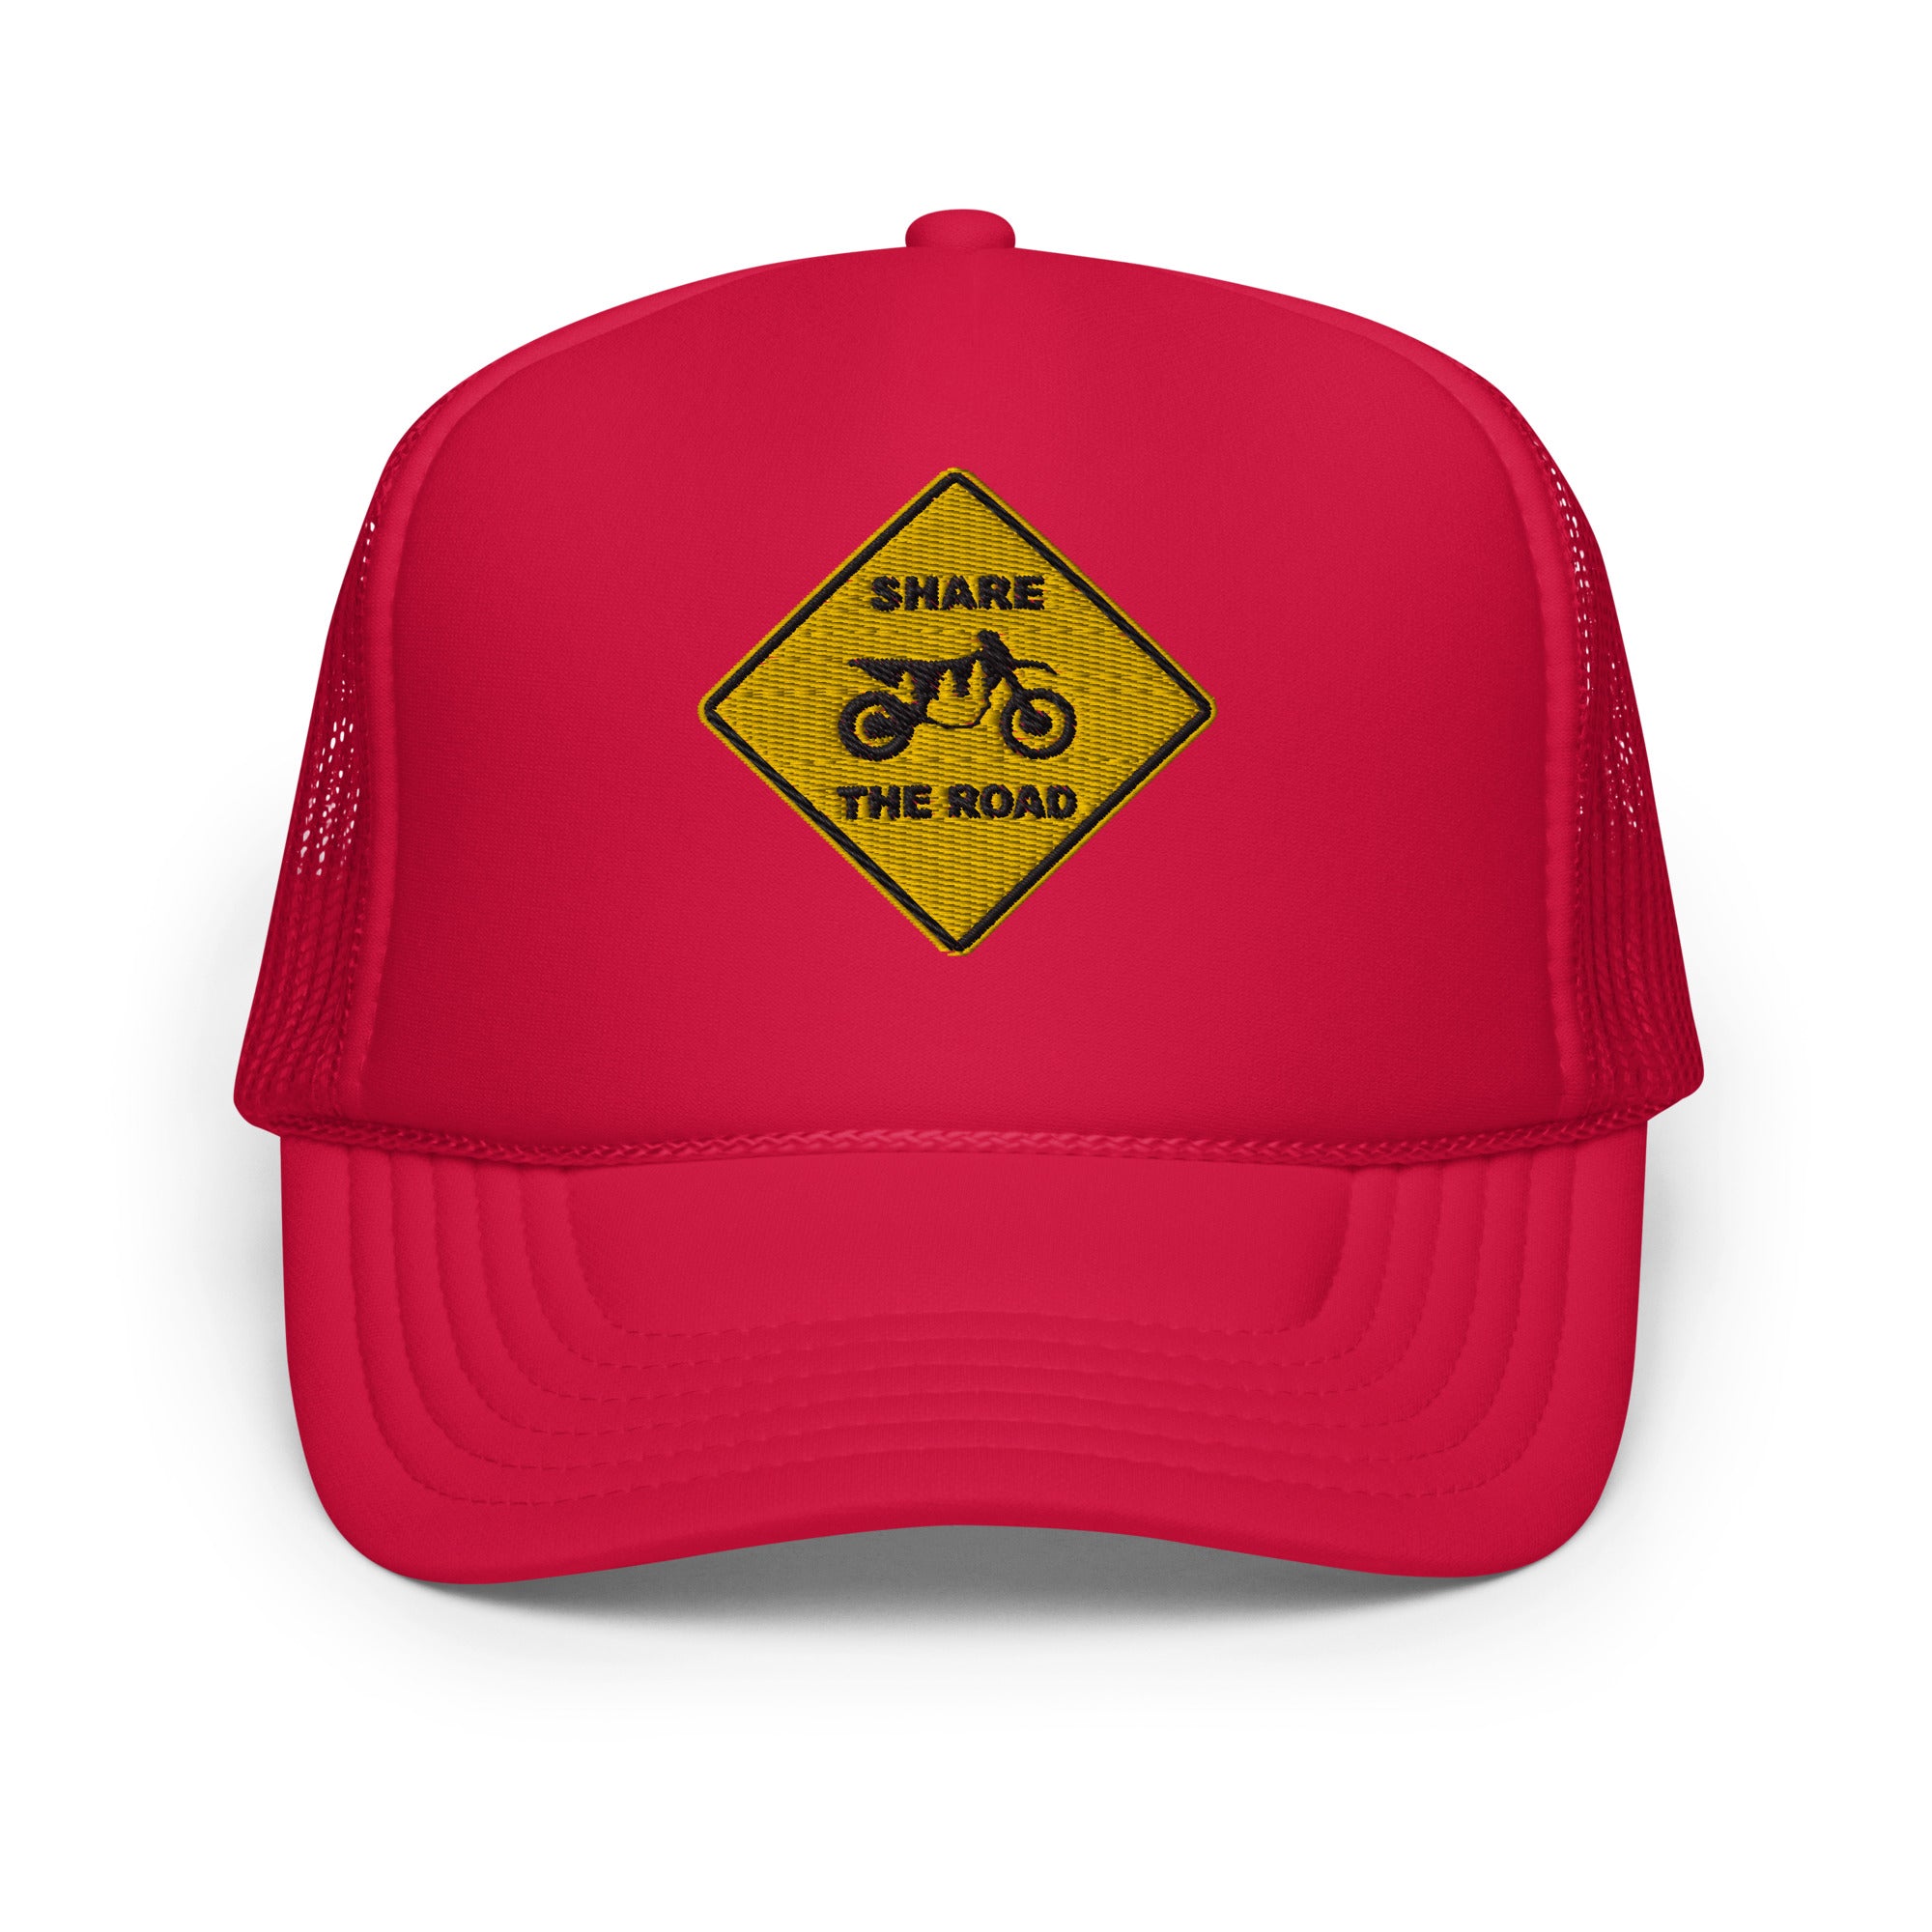 Share The Road Hat, Trucker, Foam